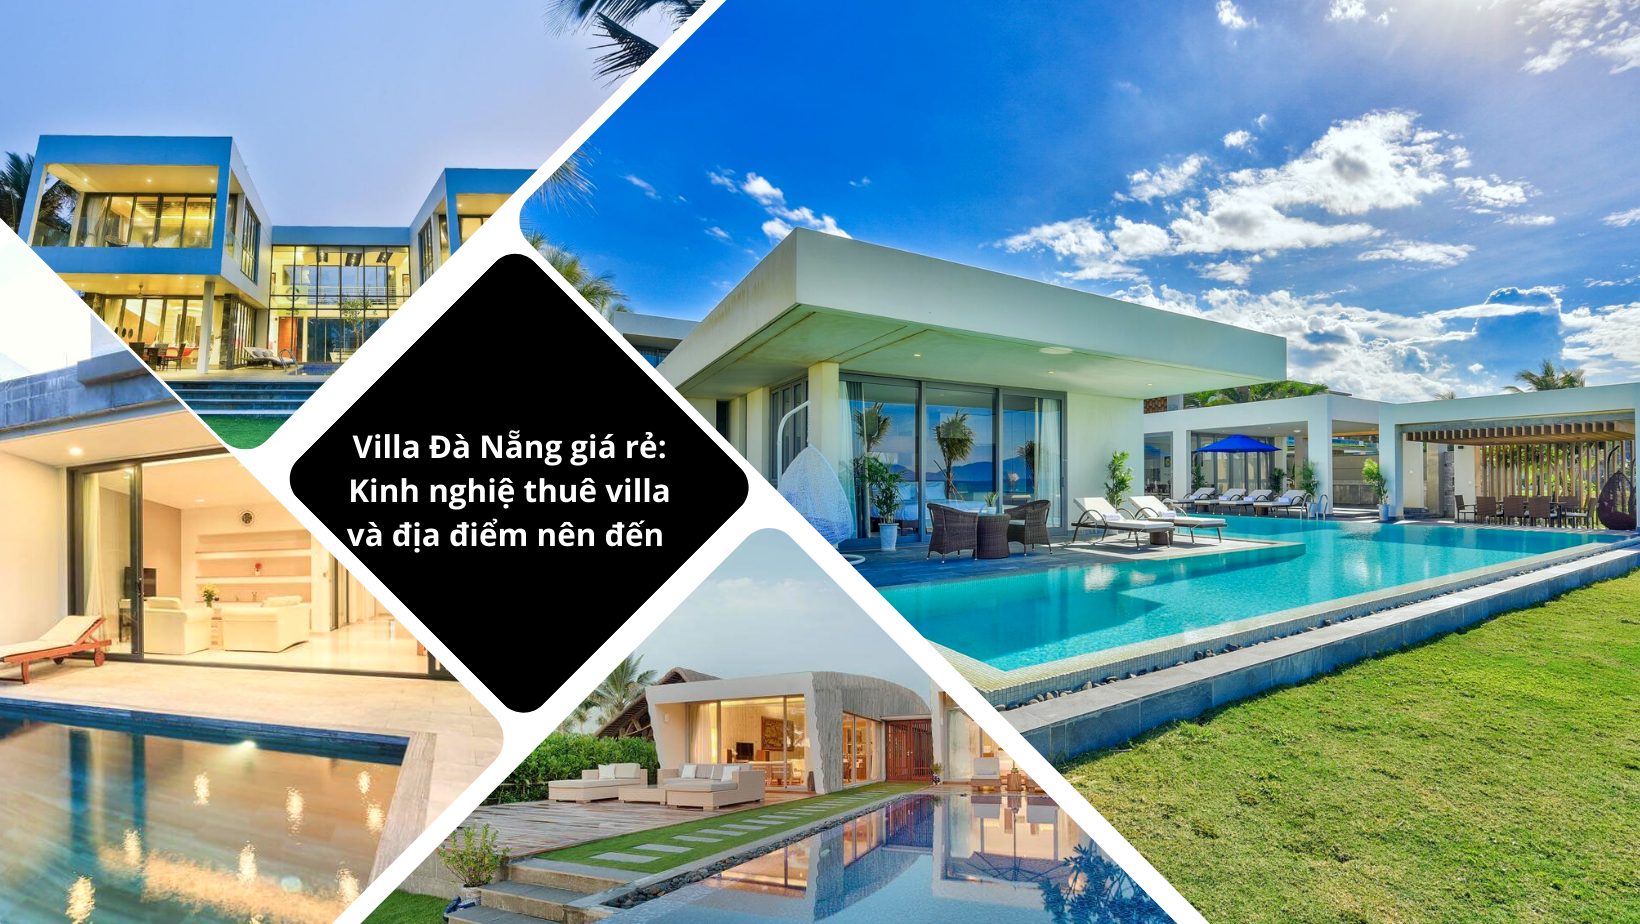 Villa Đà Nẵng giá rẻ: Kinh nghiệ thuê villa và địa điểm nên đến